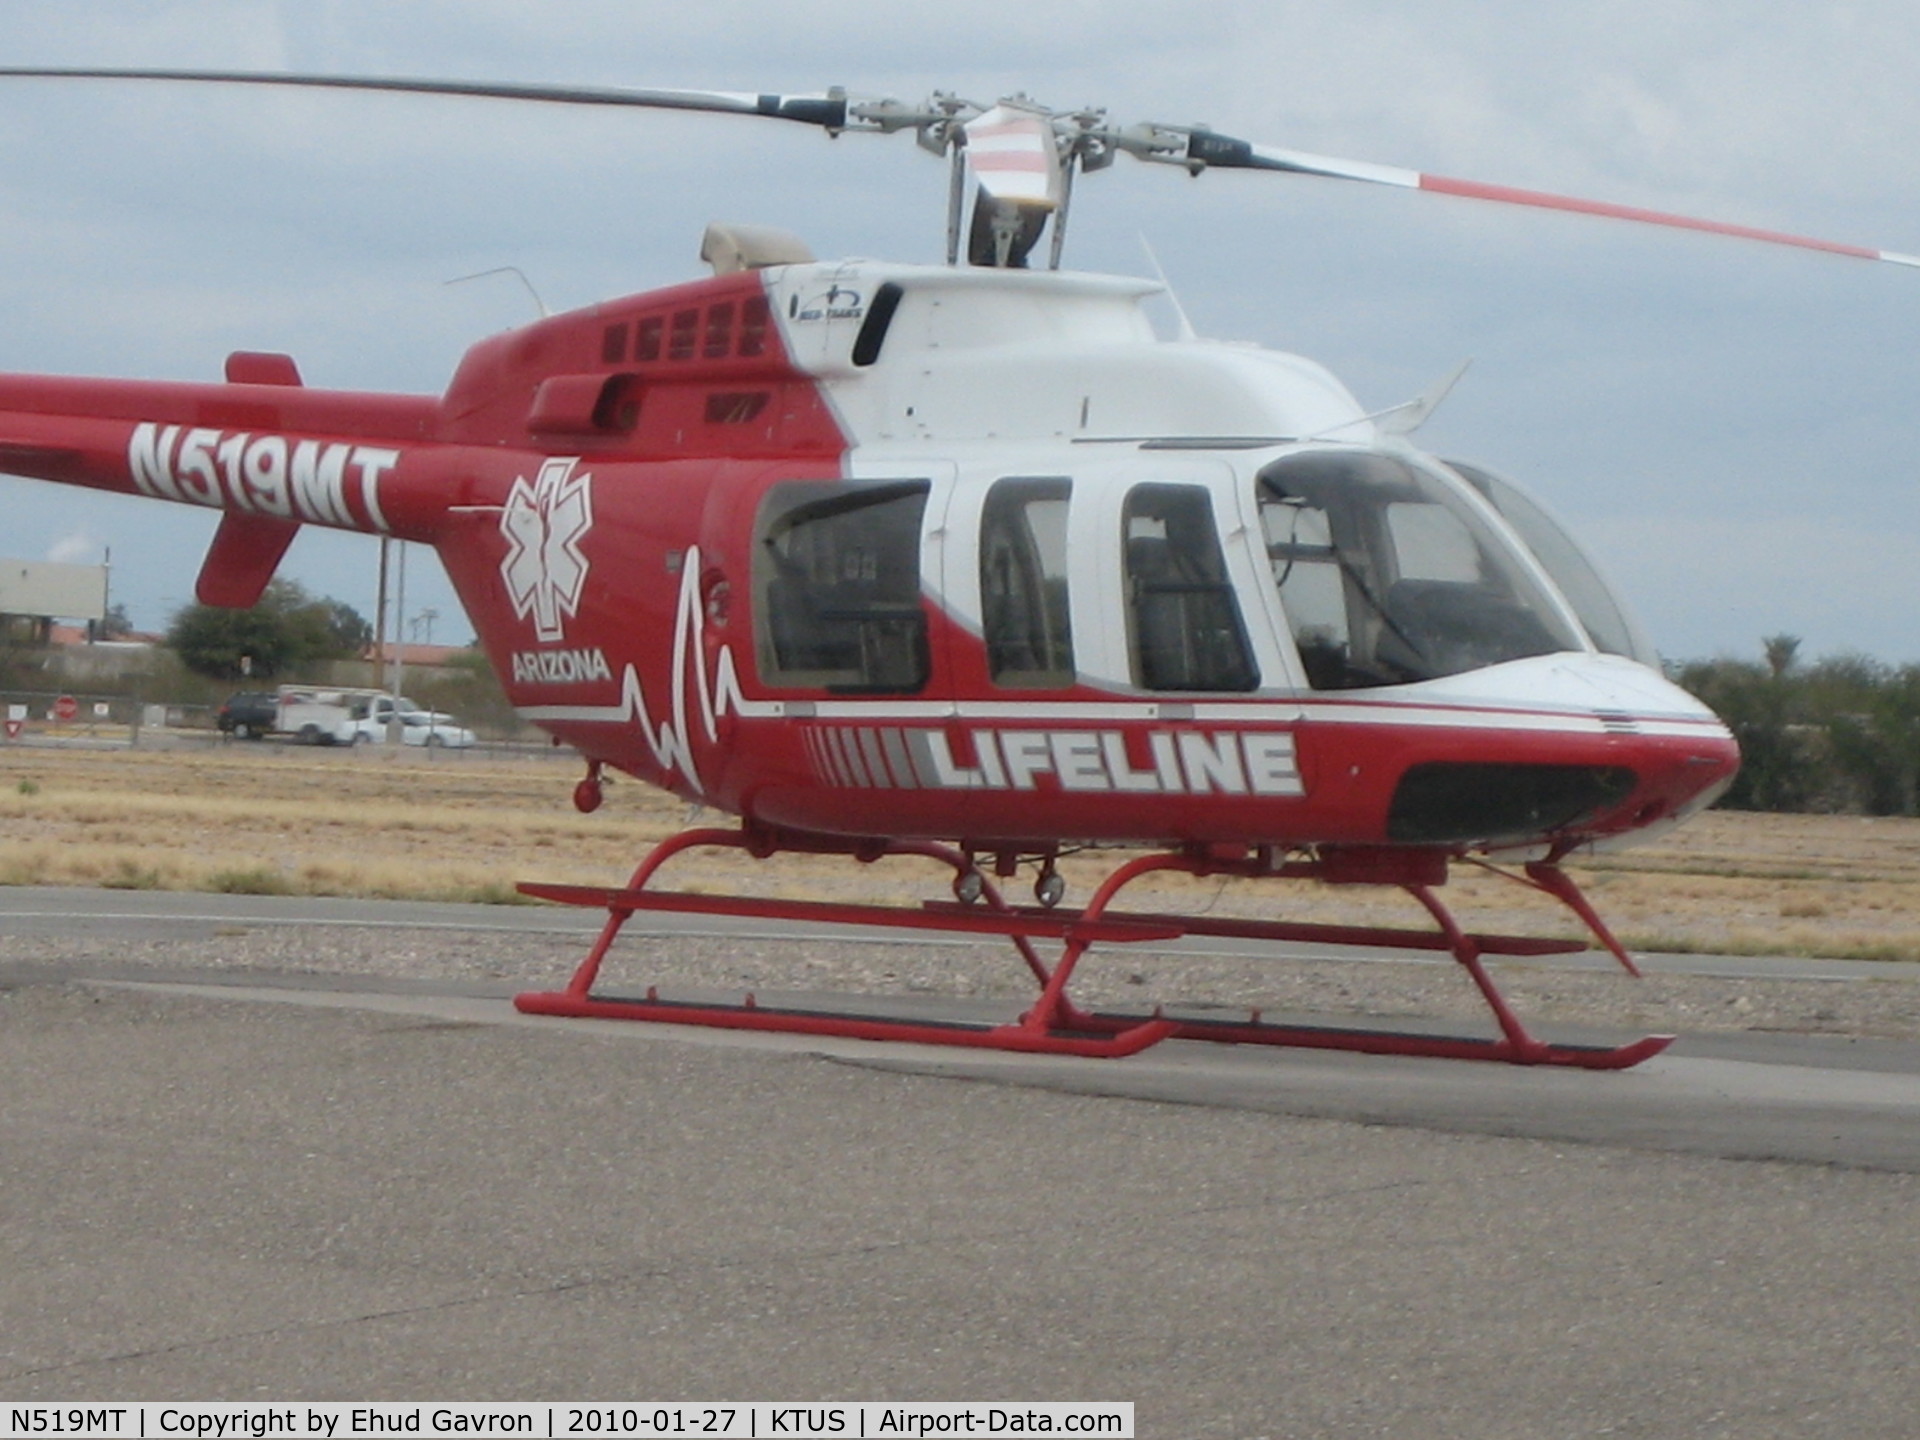 N519MT, , Lifeline Helicopter at Med-Trans hangar, KTUS